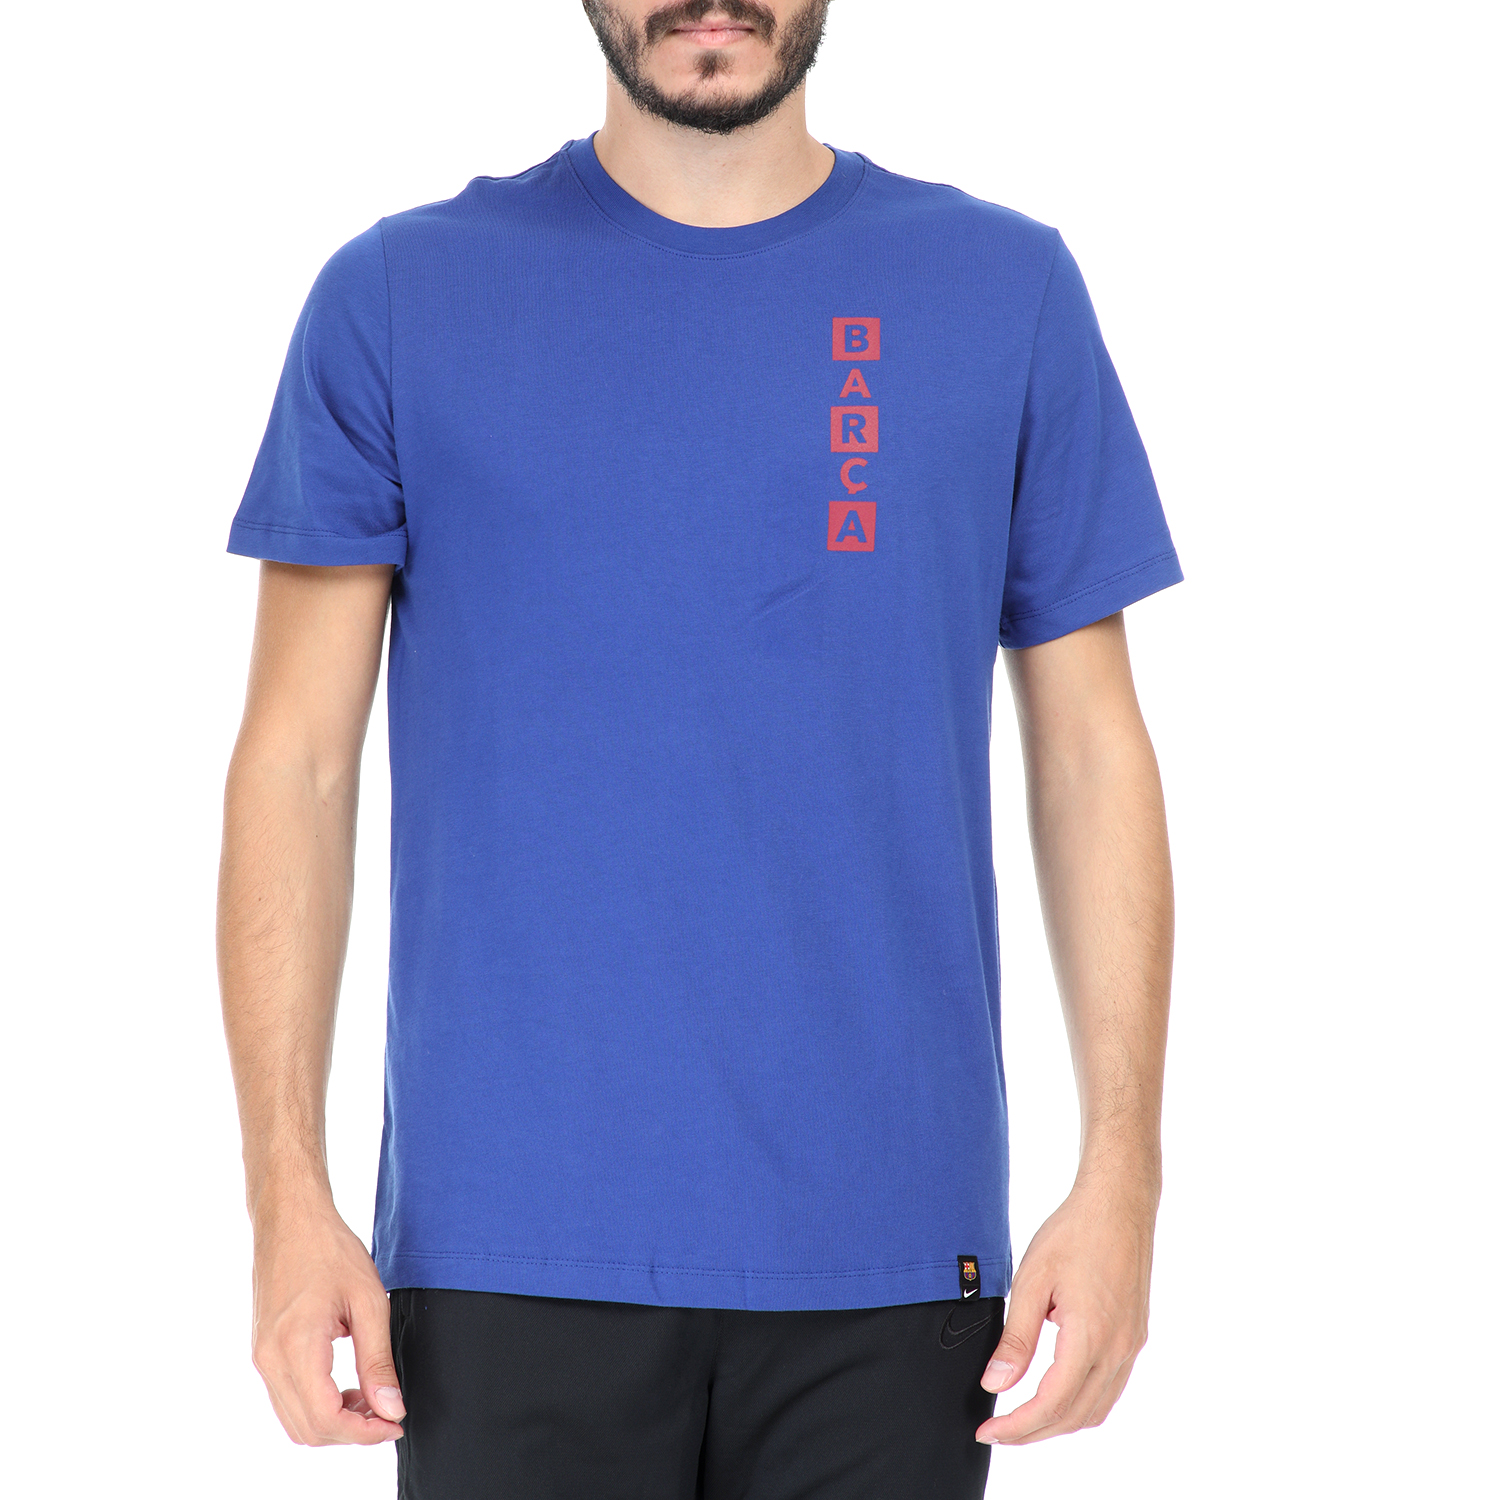 NIKE Ανδρική κοντομάνικη μπλούζα NIKE FCB KIT STORY TELL μπλε